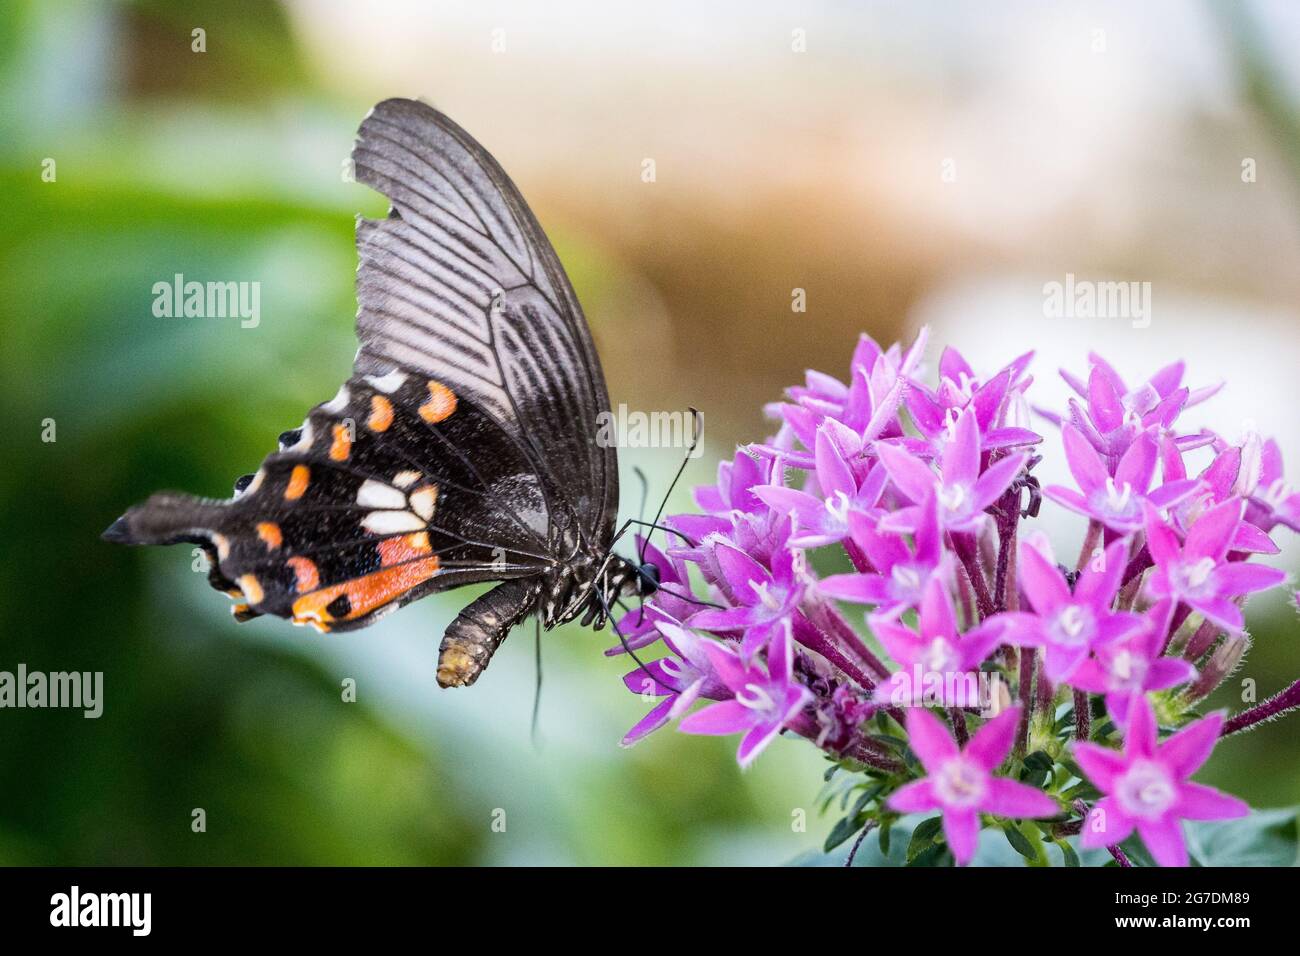 Nahaufnahme eines scharlachroten Mormons (Papilio Rumanzovia) Schmetterlings, der Nektar einer rosa Blume trinkt. Stockfoto